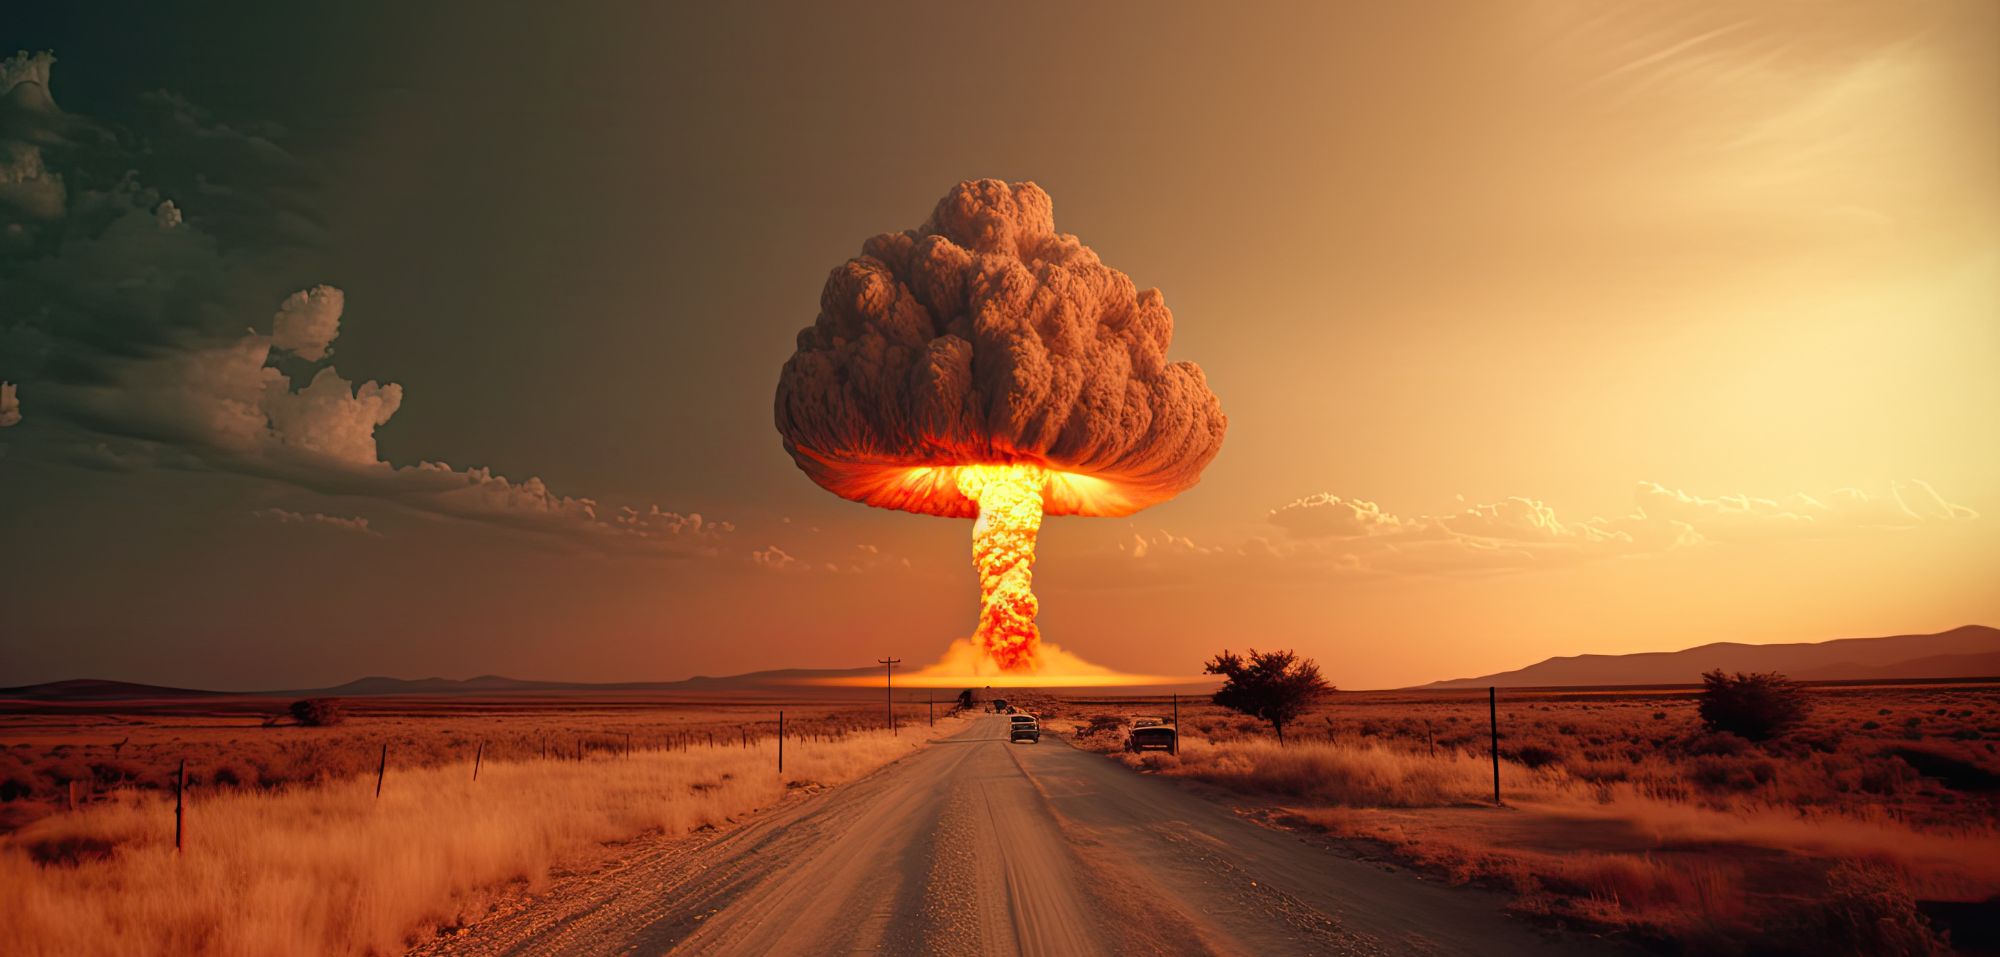 Radius einer Atombombe: So verheerend wären die Folgen nach dem Einschlag